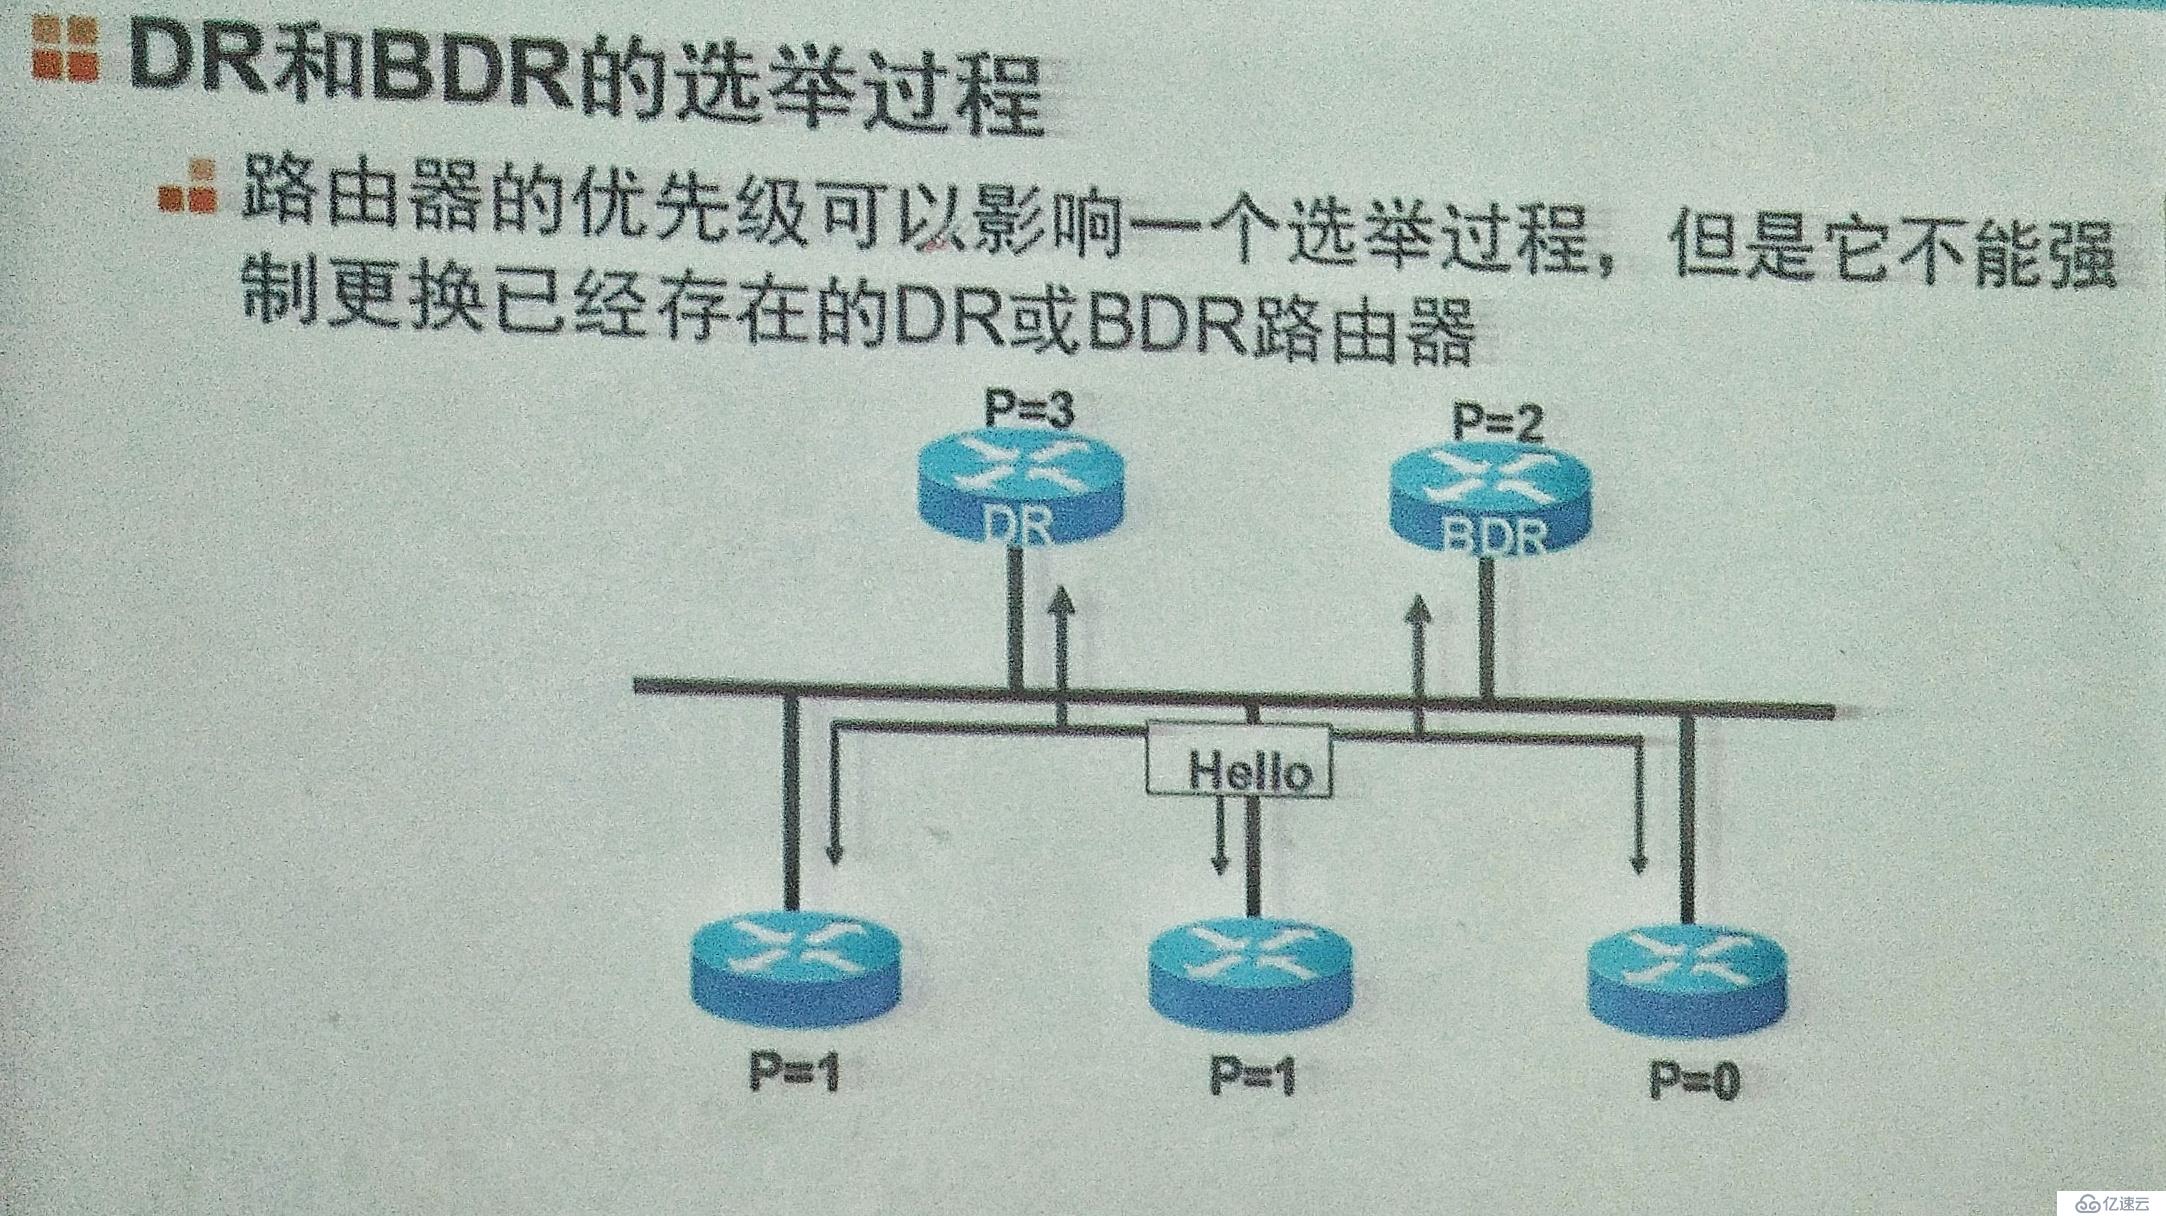 动态路由协议RIP,OSPF基础知识详解，以及配置实验验证